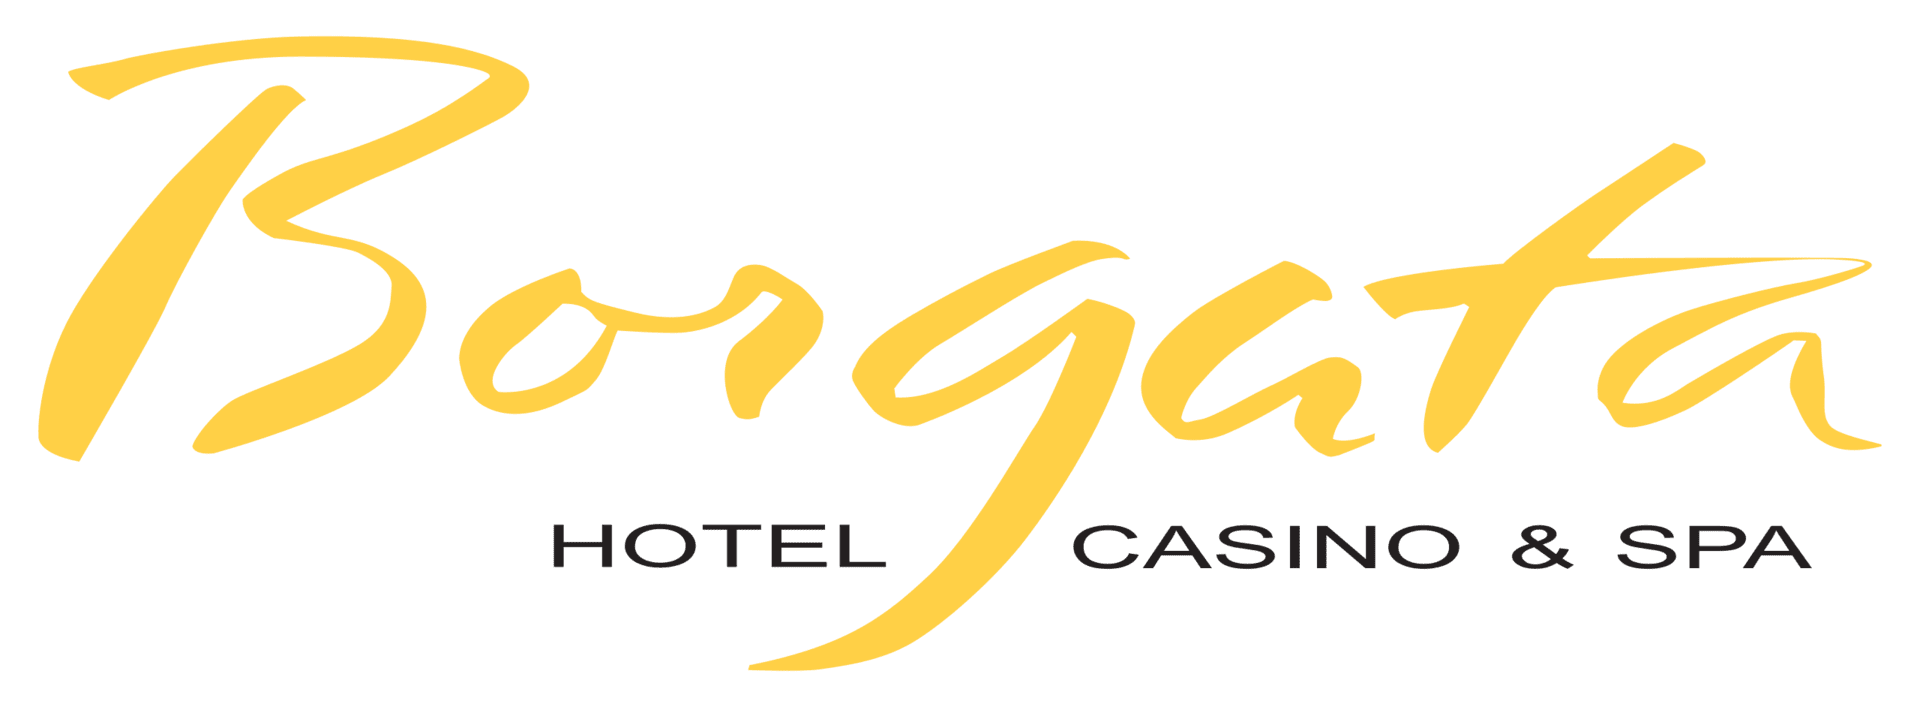 Borgata Hotel, Casino, & Spa